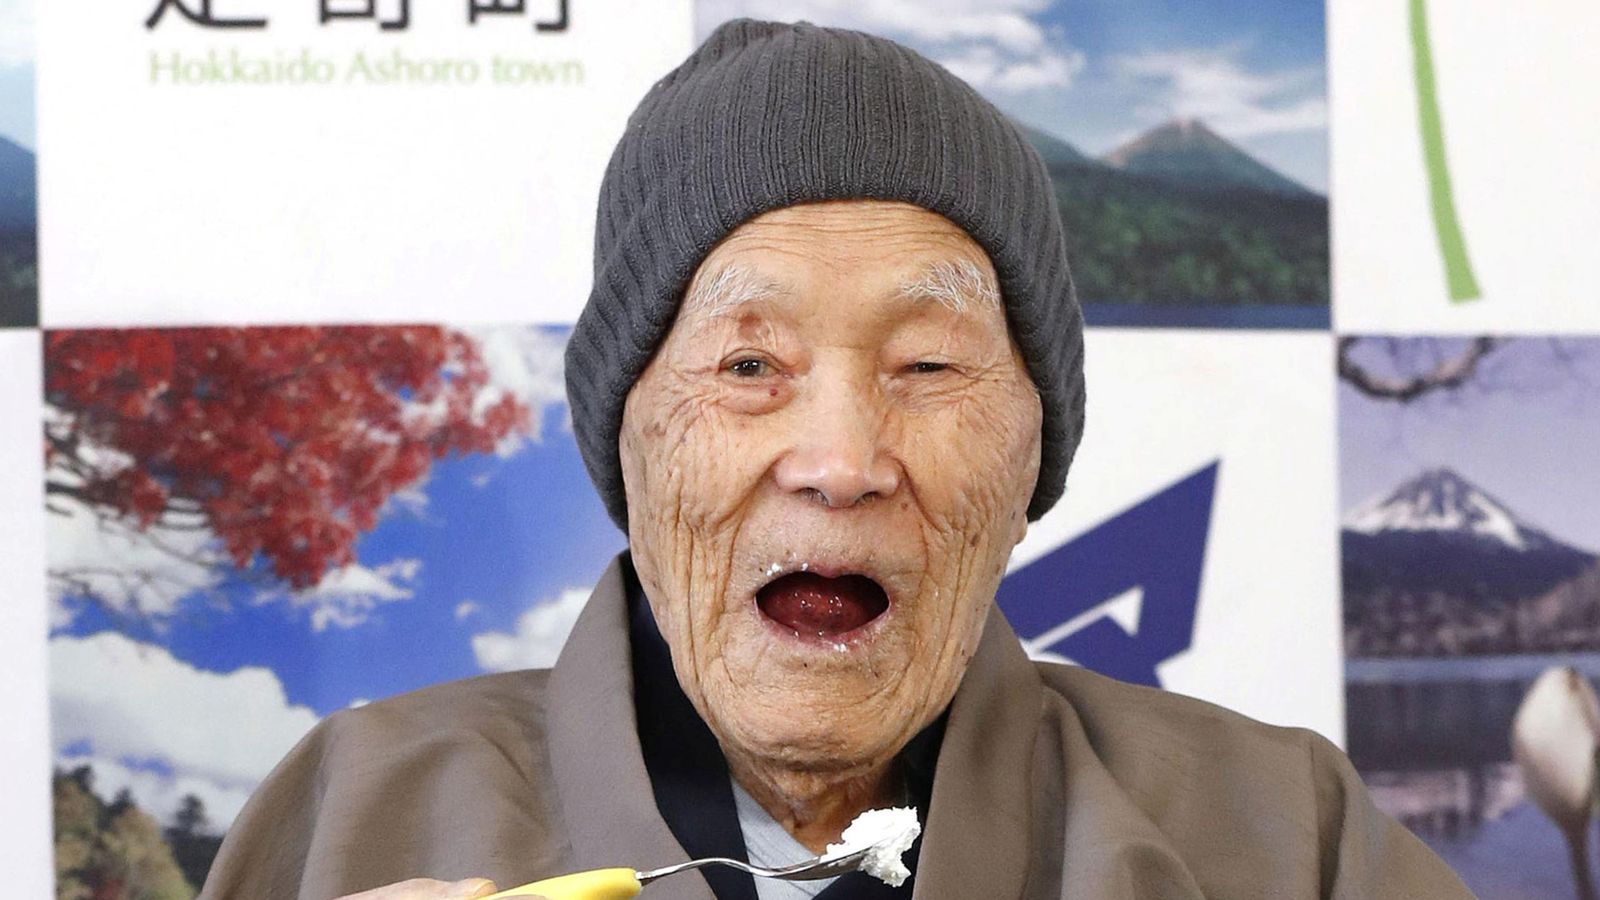 World's oldest man revealed as 112-year-old Masazo Nonaka